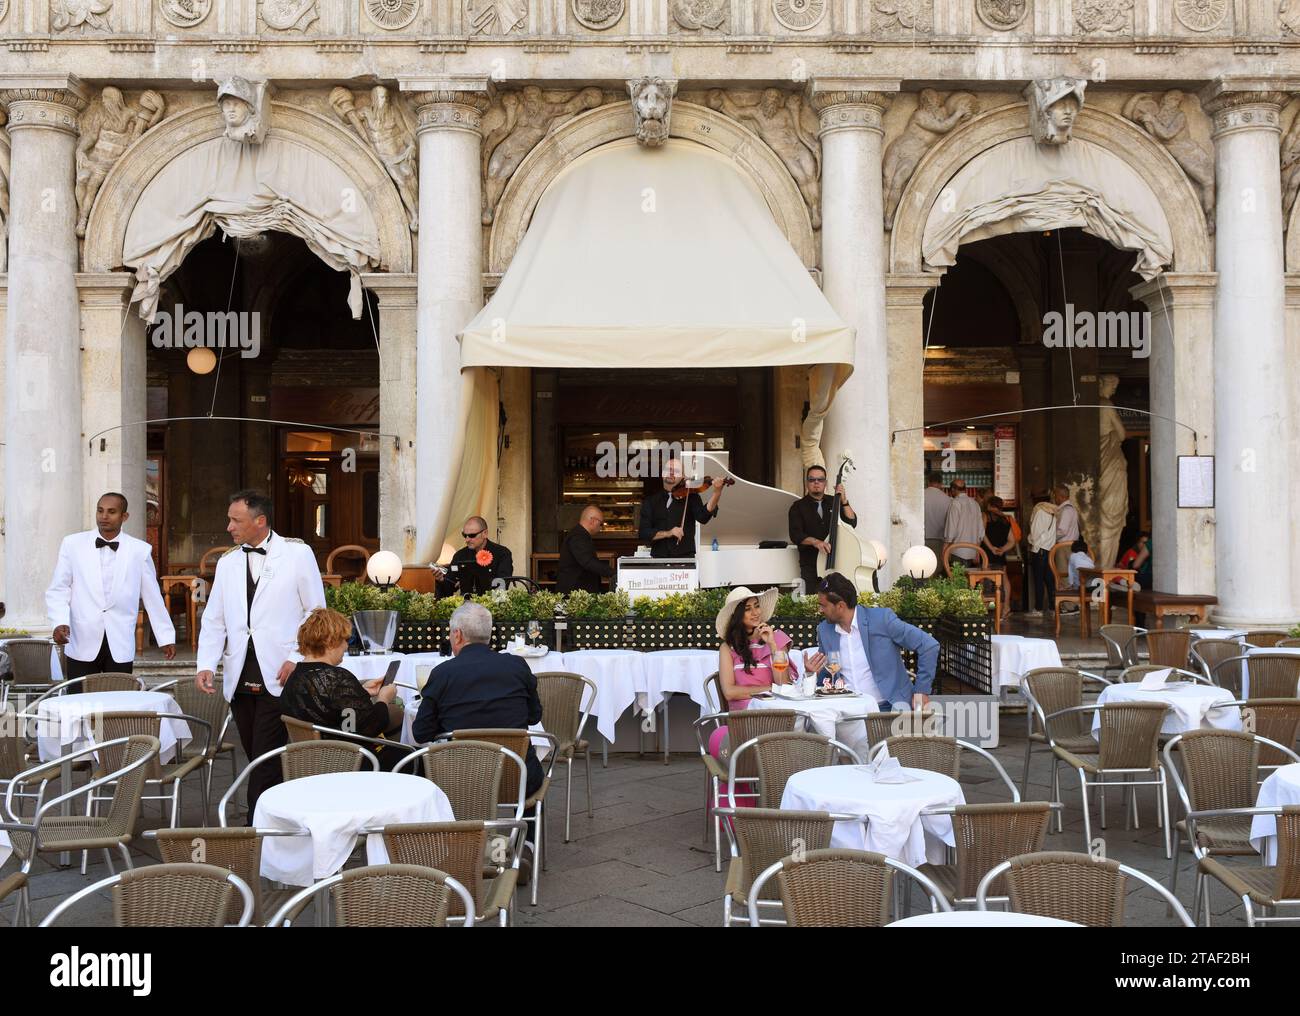 Venise, Italie - 07 juin 2017 : personnes dans un café sur la place San Marco à Venise. Banque D'Images